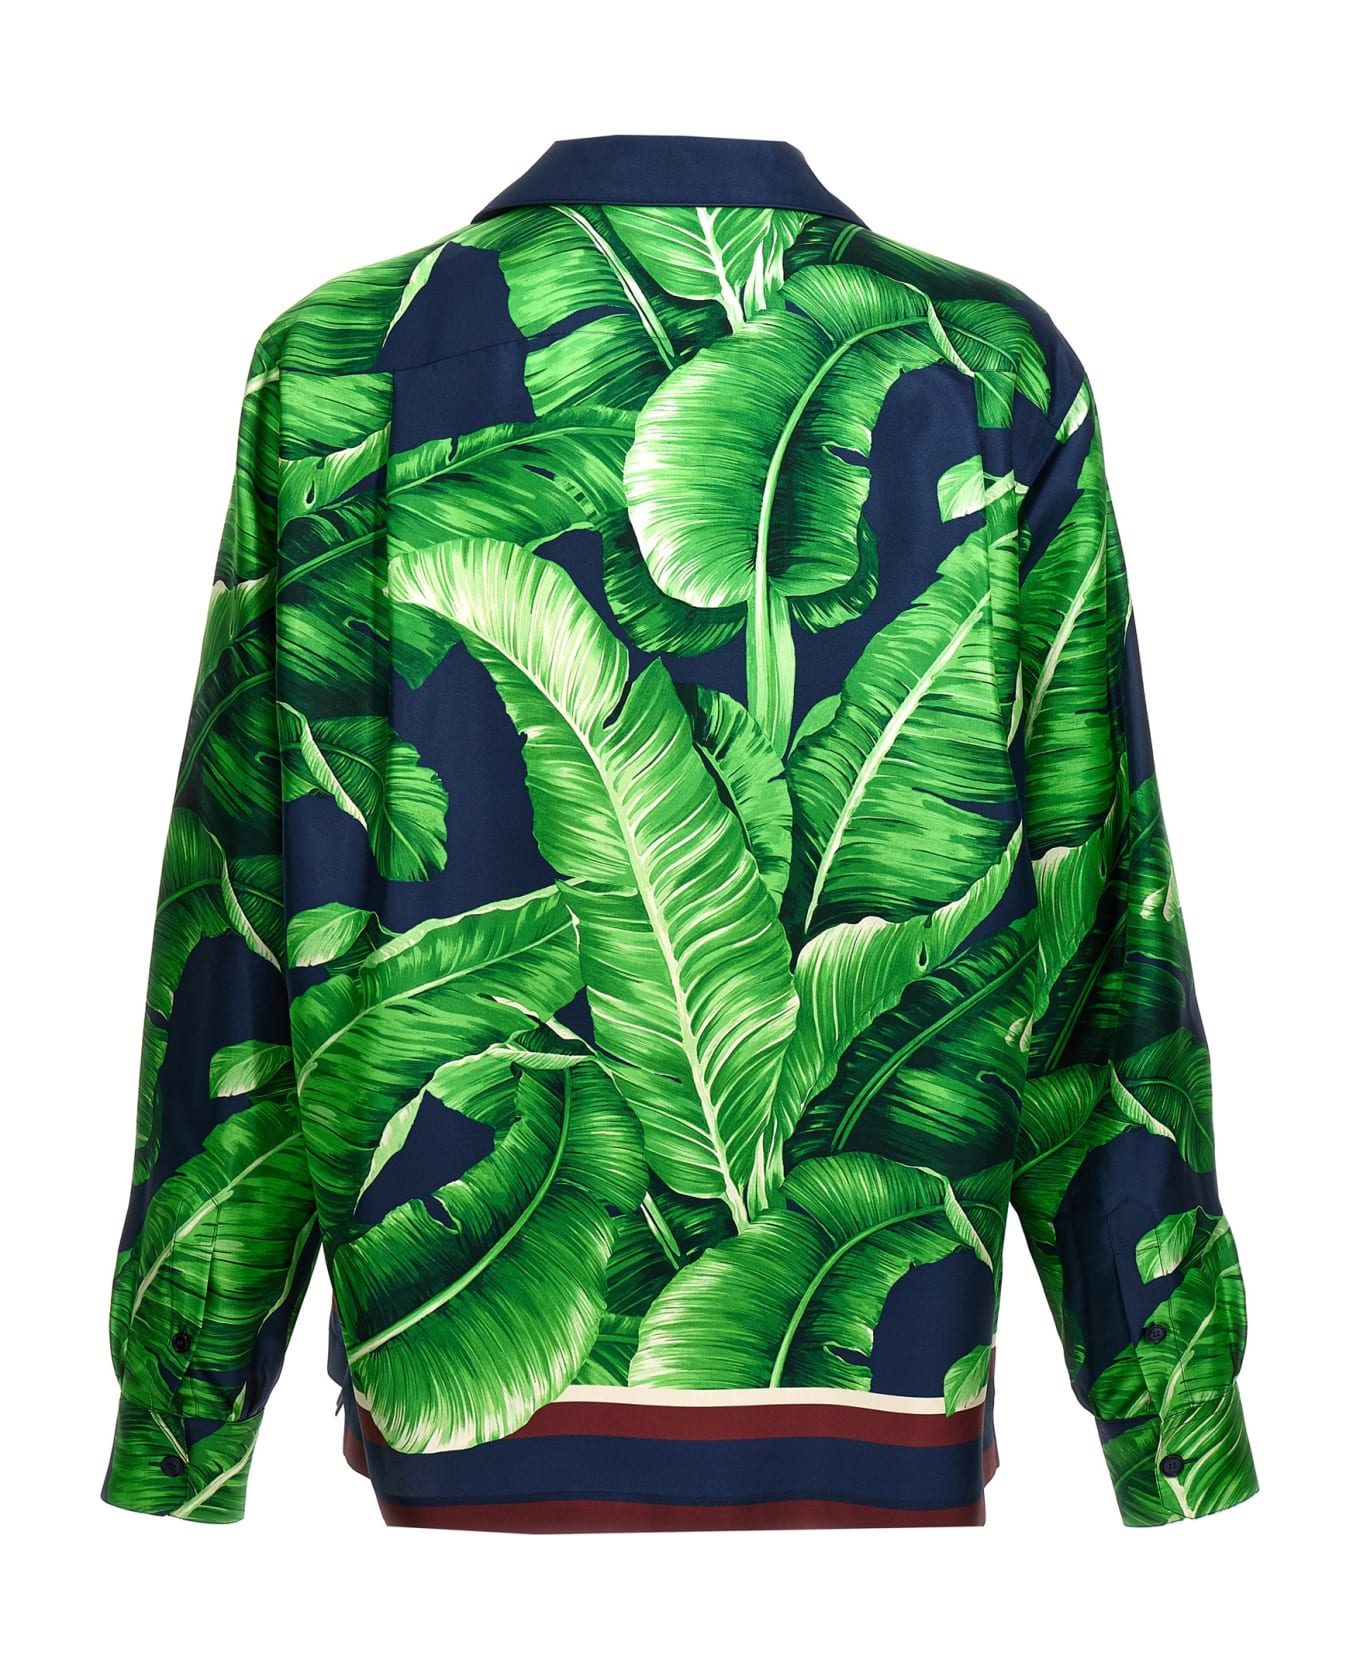 Dolce & Gabbana 'banano' Shirt - Green